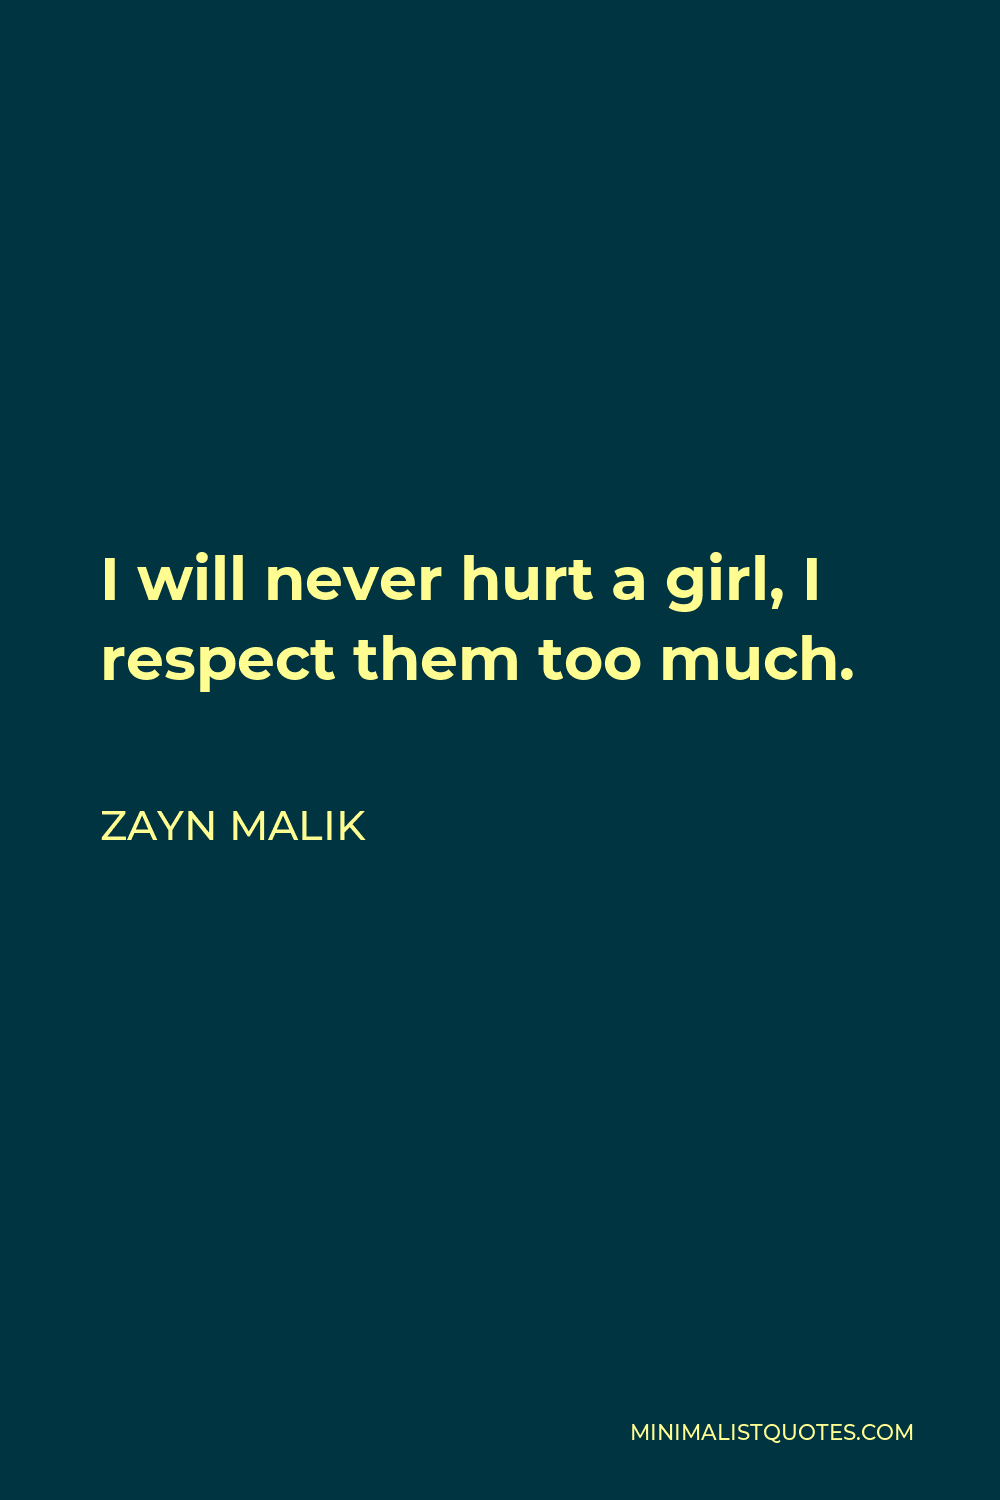 zayn malik quotes about girls